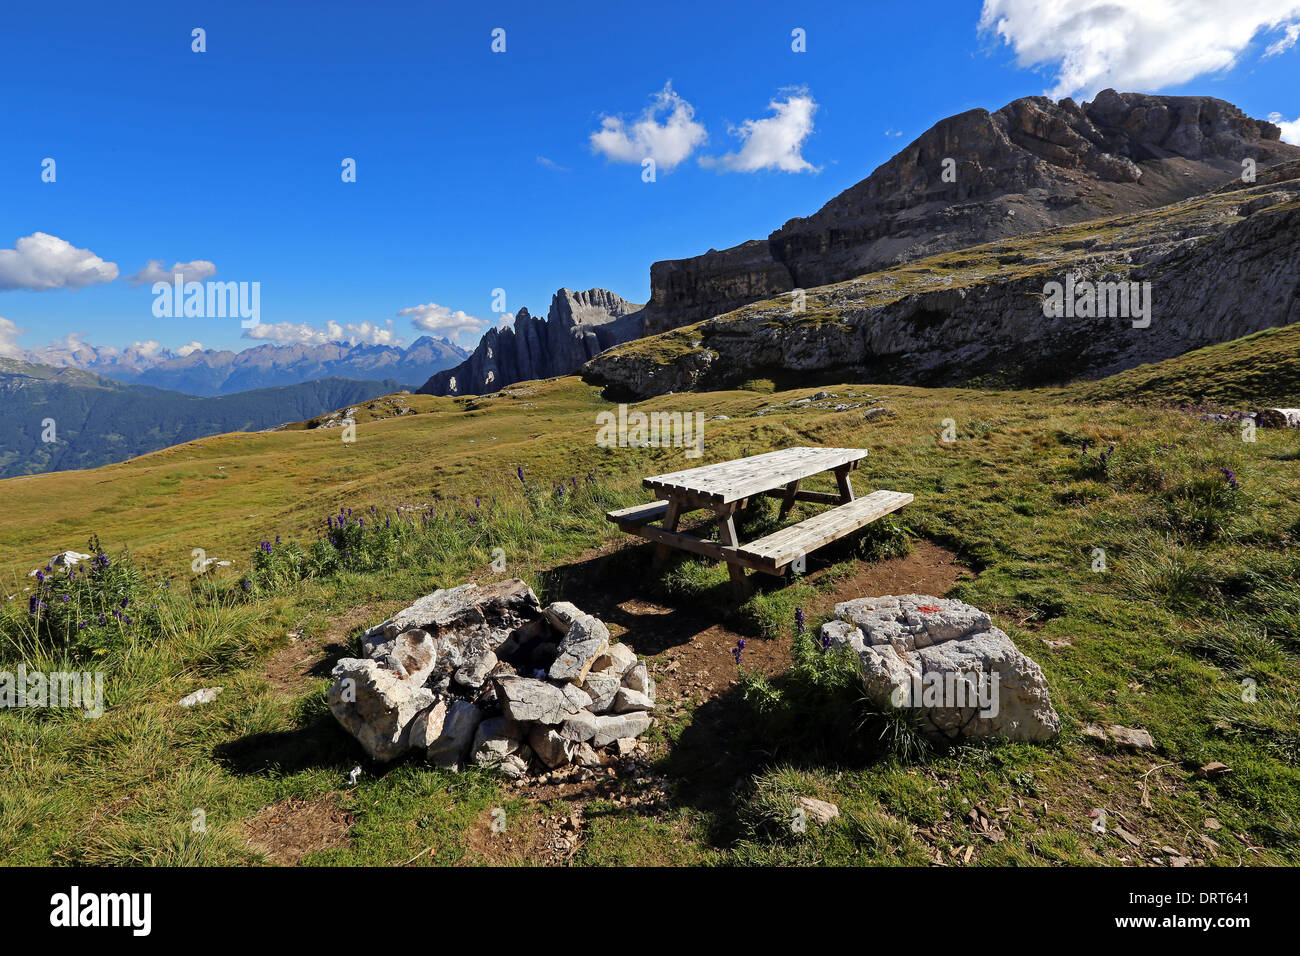 Den Latemar massiv. Sitzbank und Tisch. Alpine Wiesen. Die Dolomiten des Trentino. Italien. Stockfoto